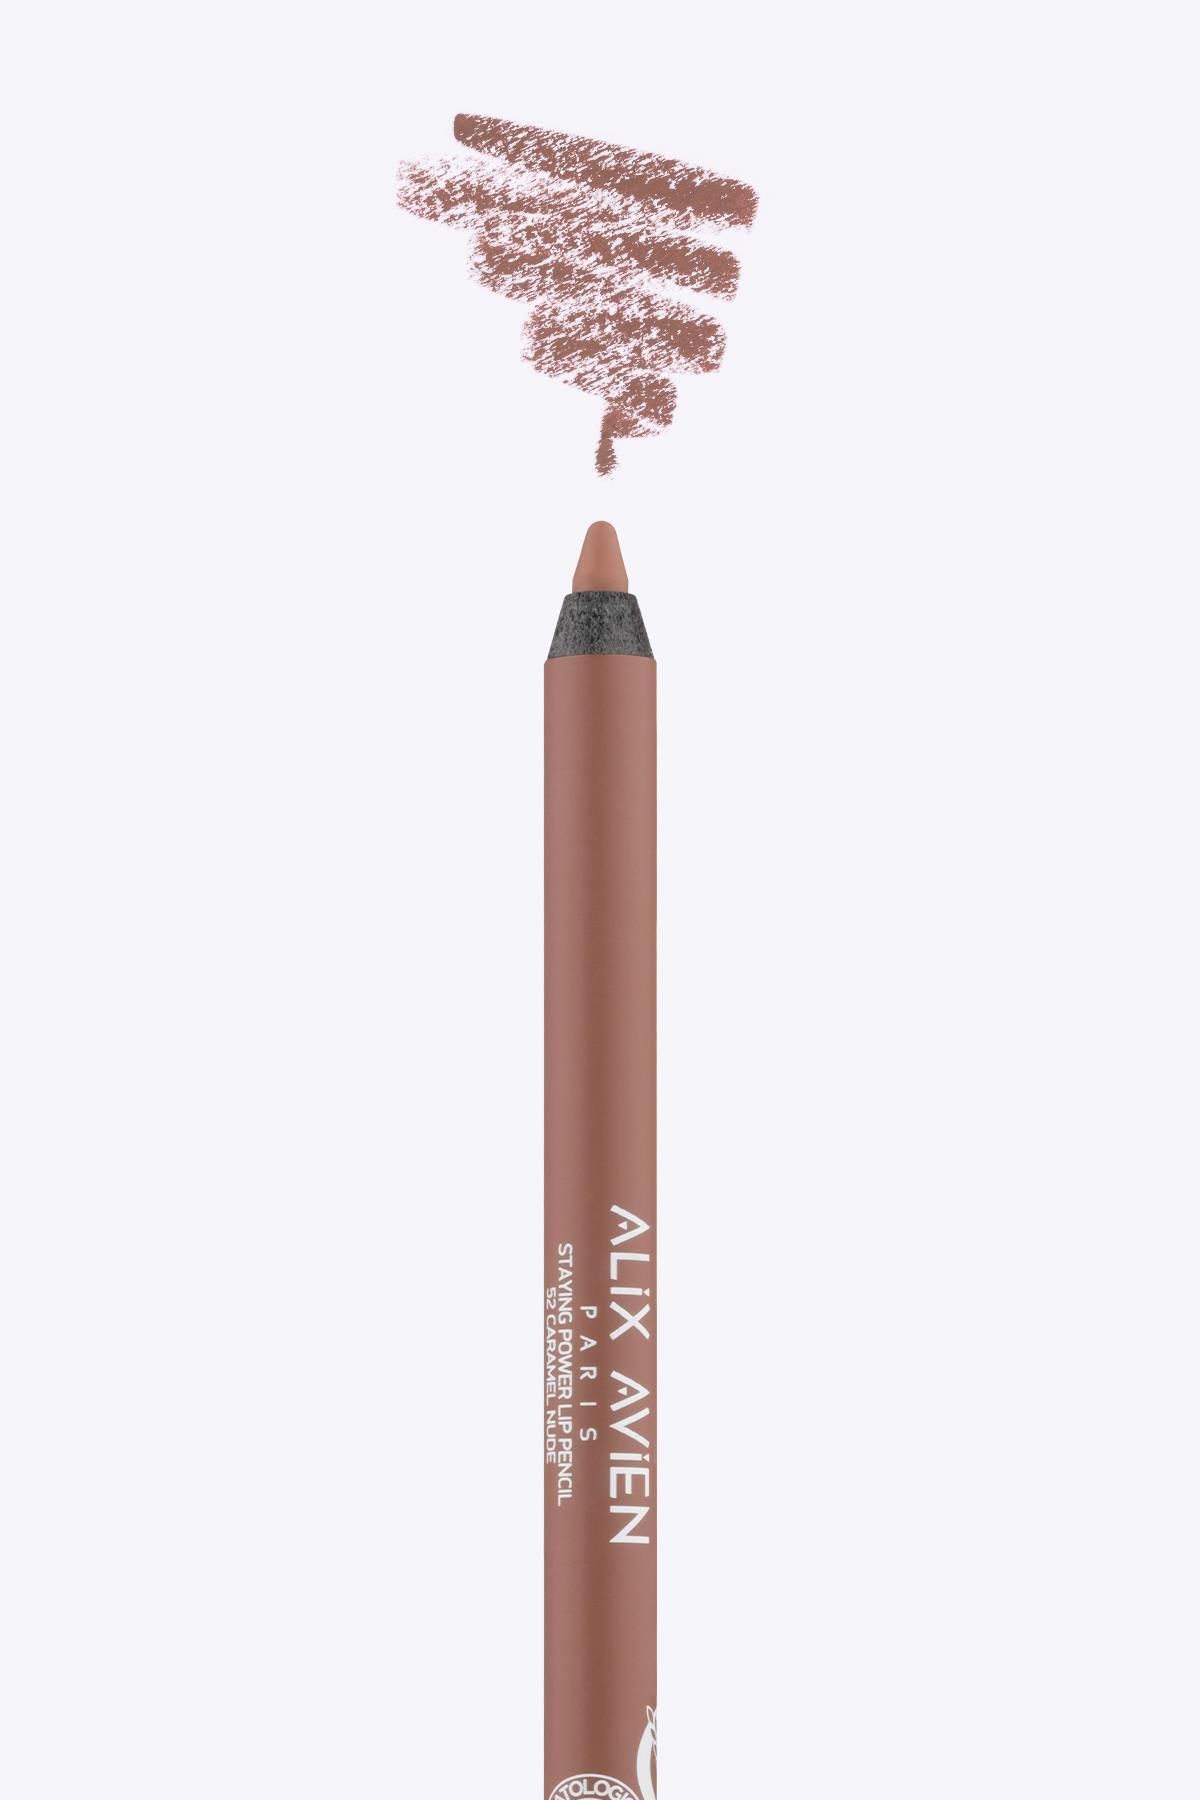 Alix Avien Uzun Süre Kalıcı Suya Dayanıklı Dudak Kalemi - Staying Power Lip Pencil 52 Caramel Nude